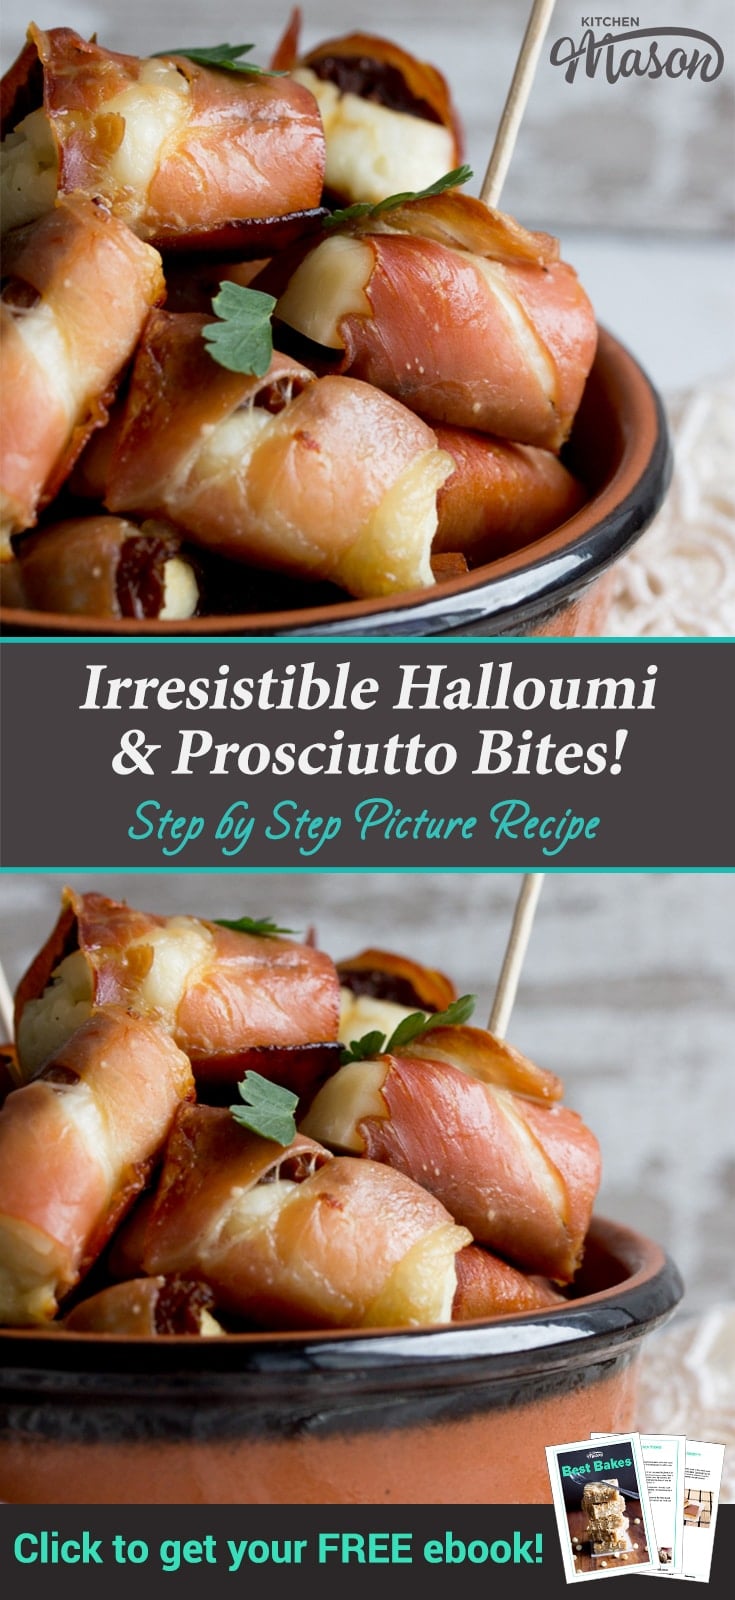 Party Snacks: Halloumi & Prosciutto Bites in a Dish